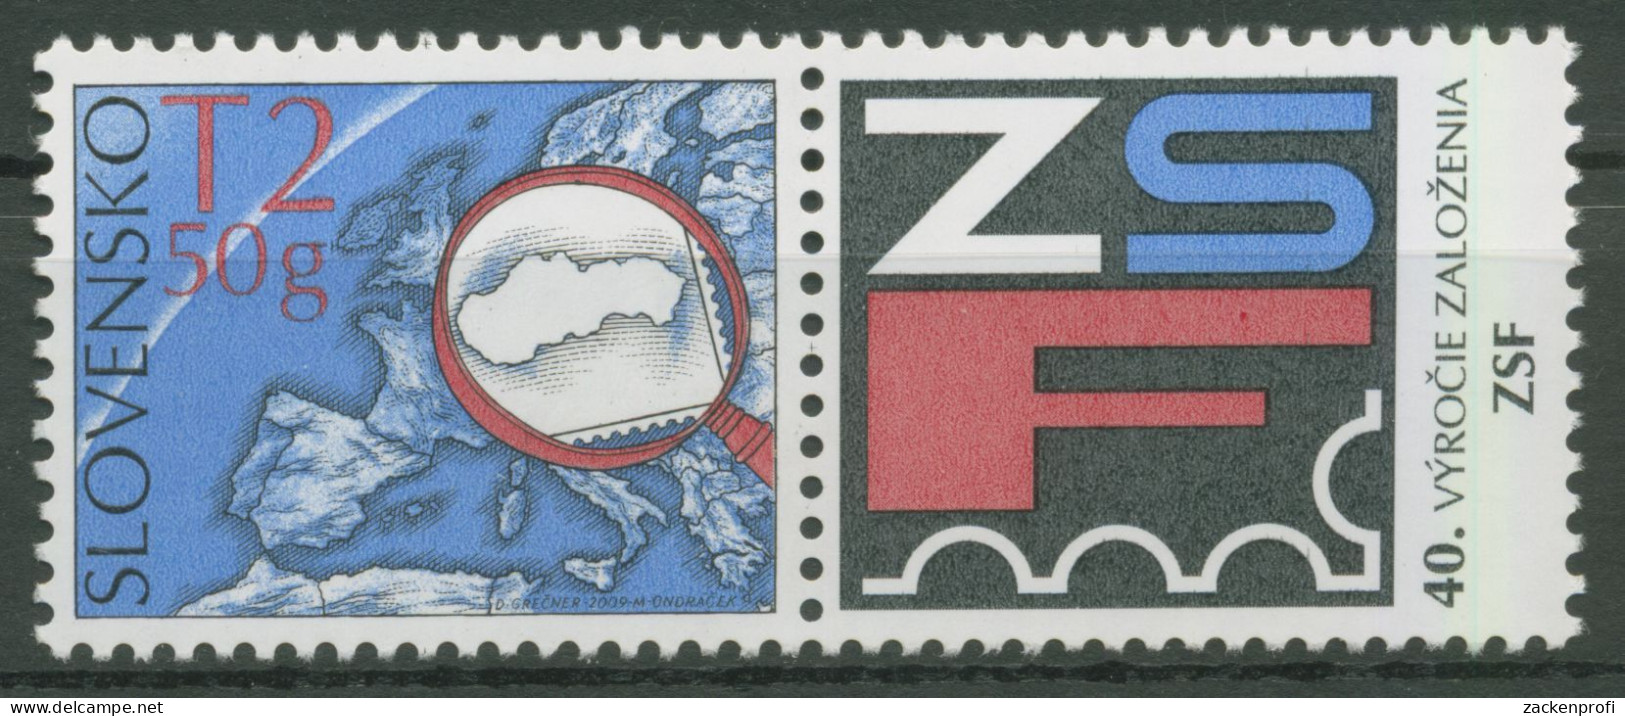 Slowakei 2009 Philatelistenverband 613 Zf Postfrisch - Neufs